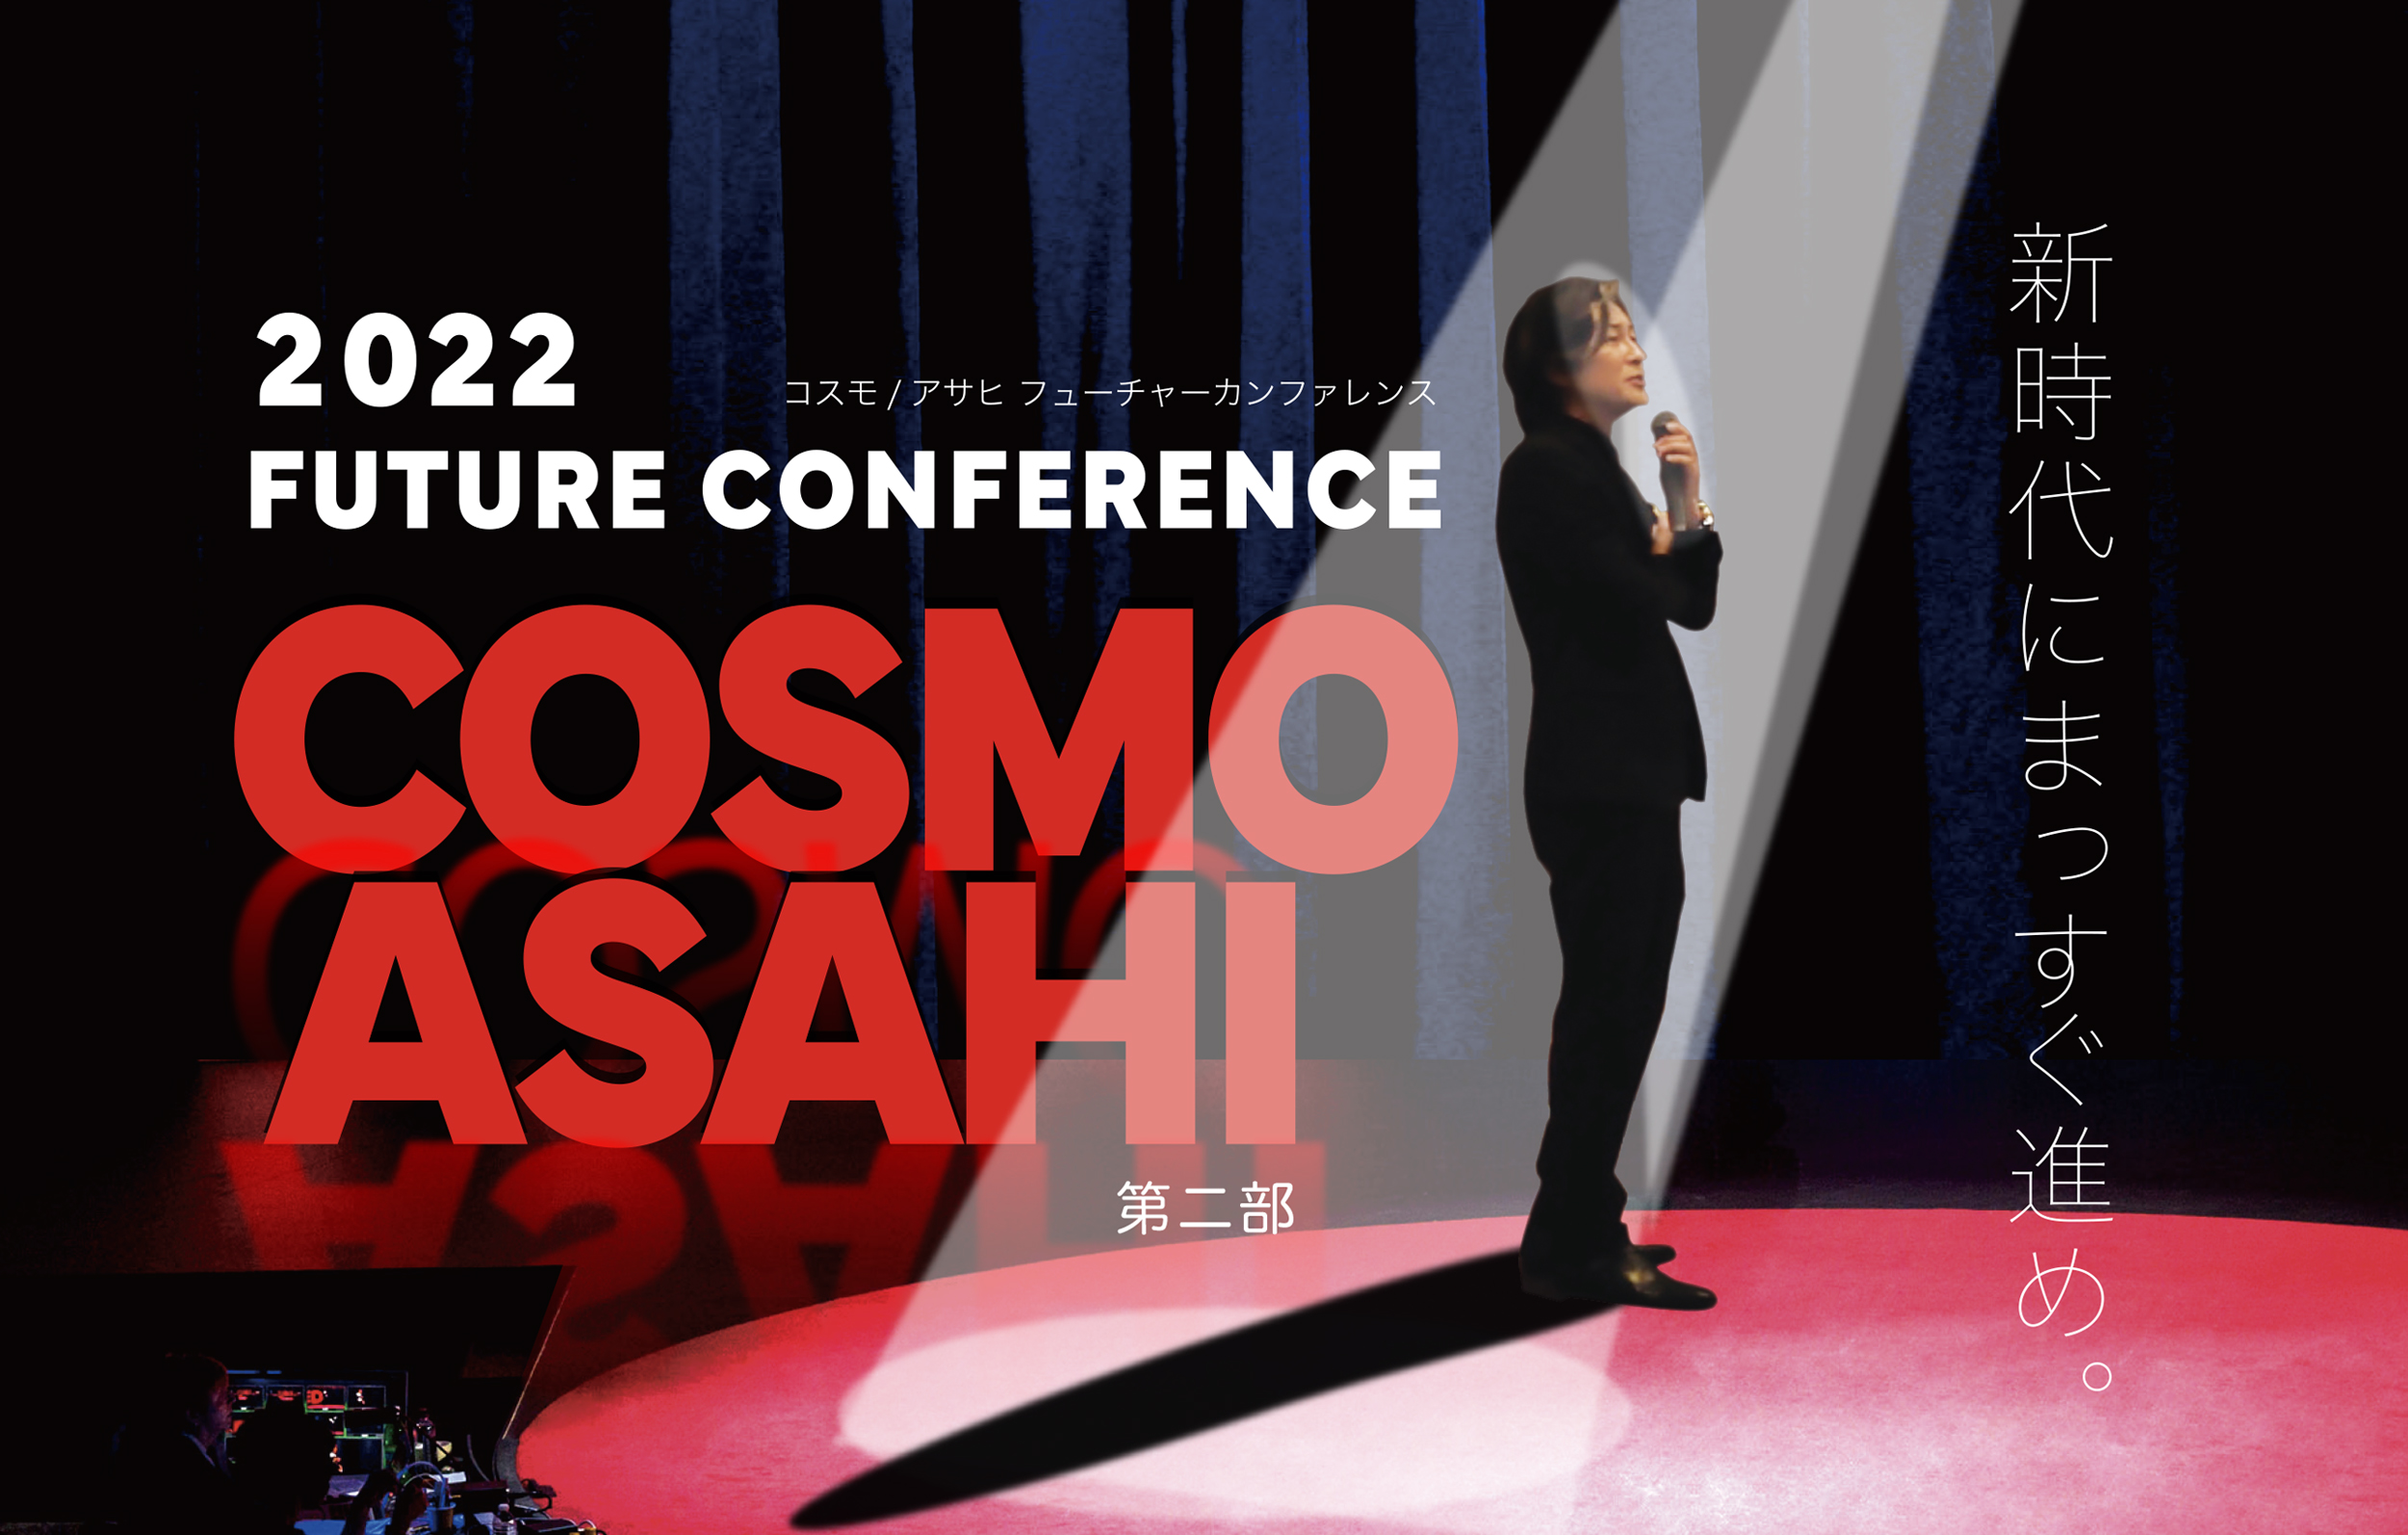 2022COSMO /ASAHI FUTURE CONFERENCE 第二部